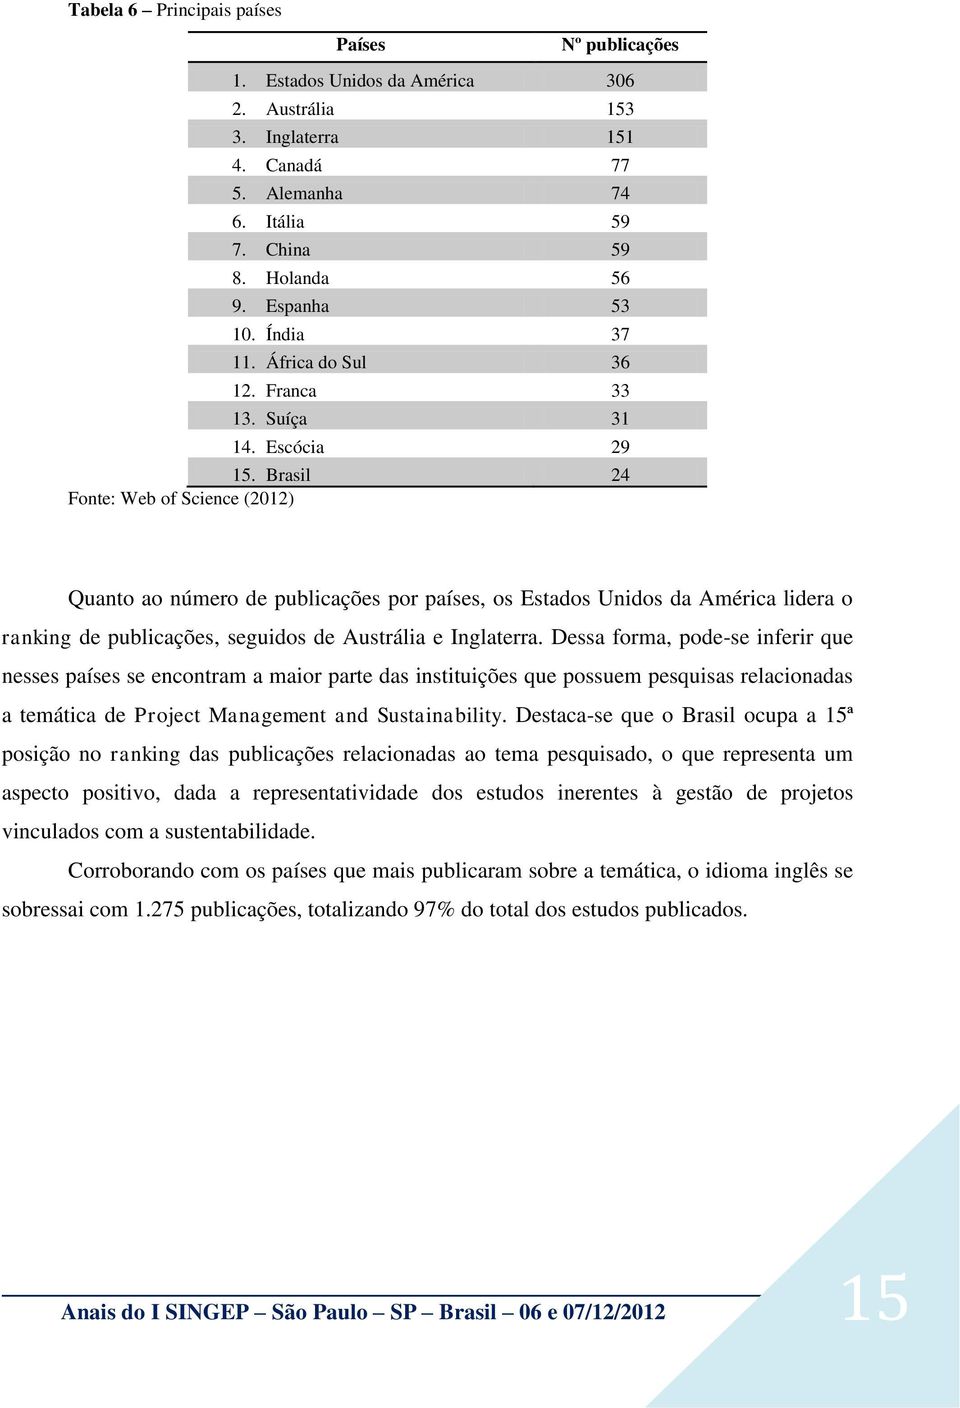 Brasil 24 Fonte: Web of Science (2012) Quanto ao número de publicações por países, os Estados Unidos da América lidera o ranking de publicações, seguidos de Austrália e Inglaterra.